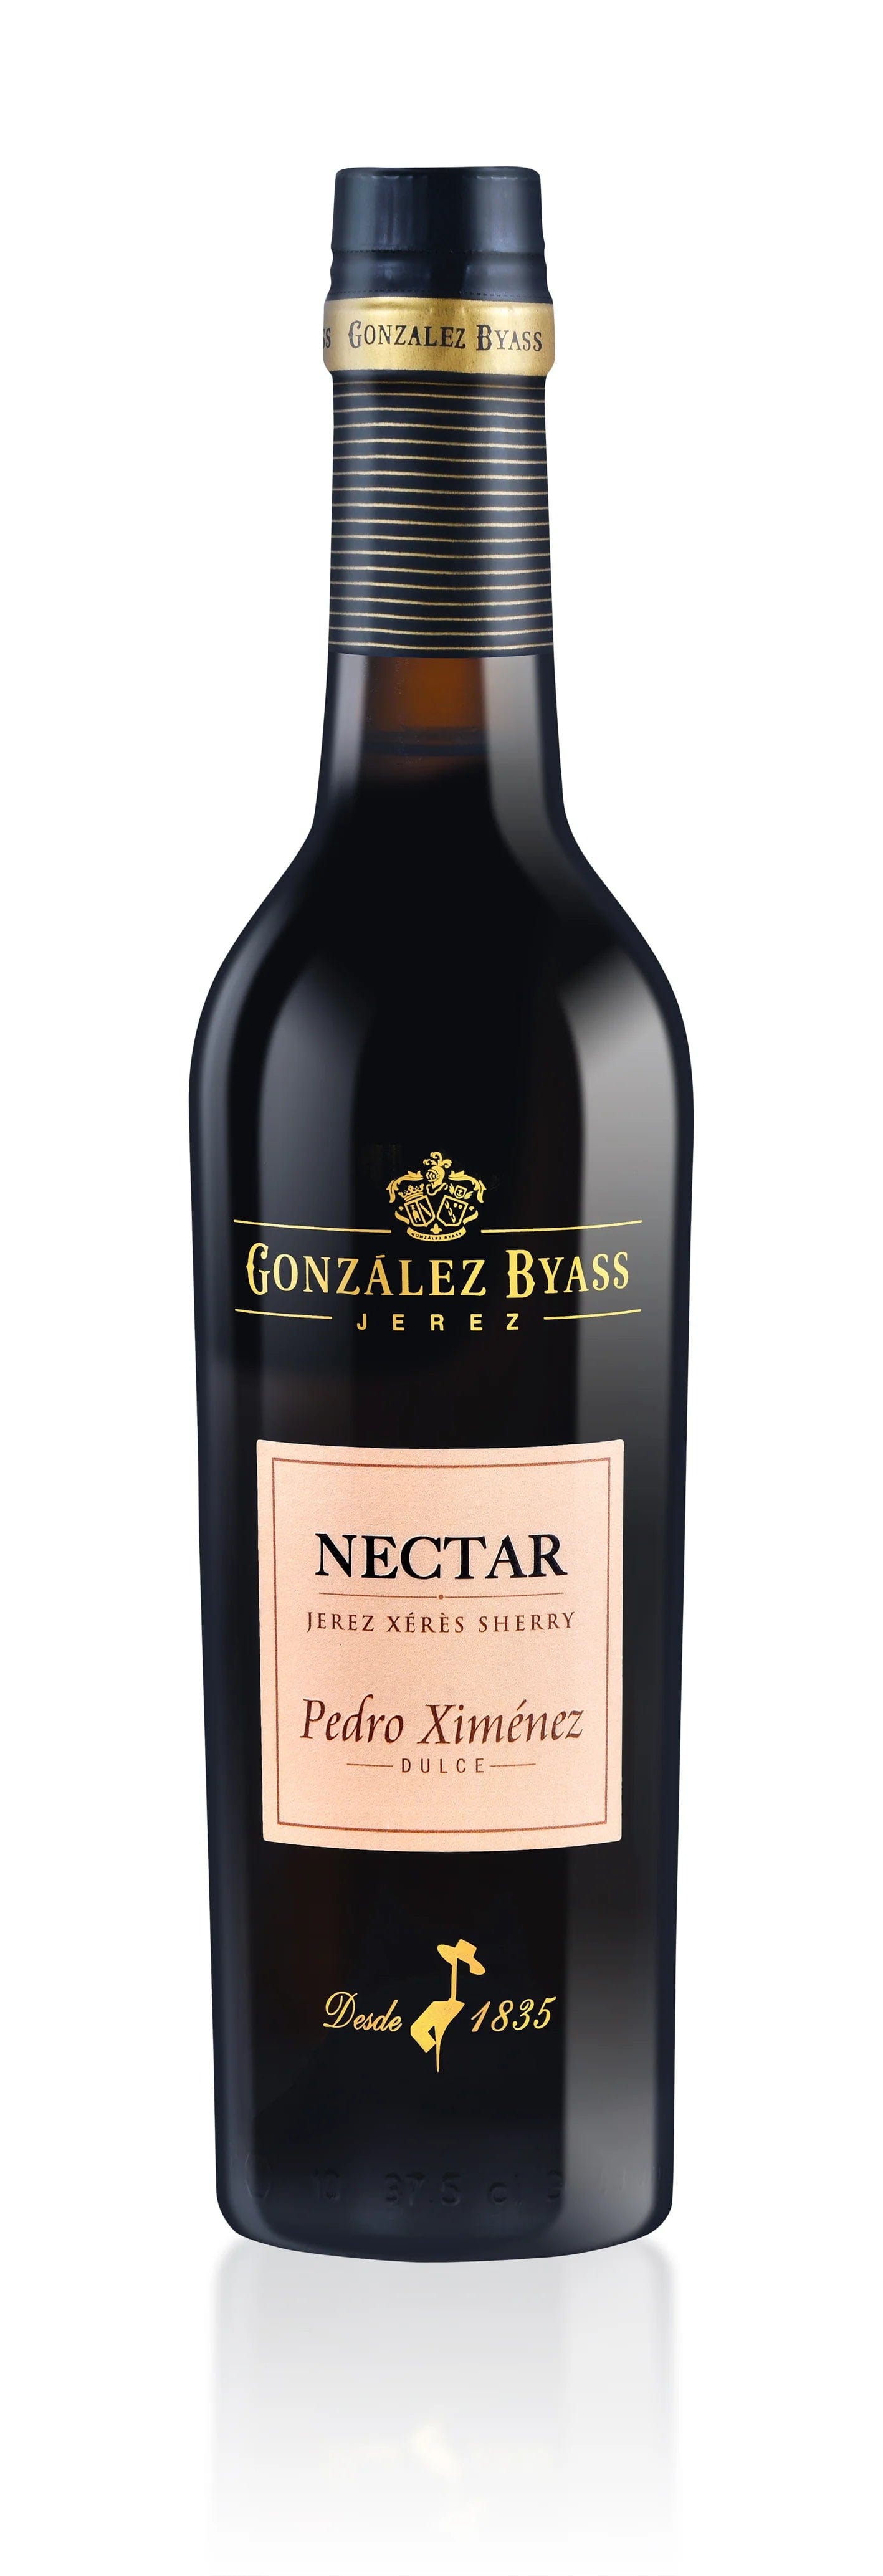 Gonzalez Byass Nectar Pedro Ximenez 375ml Wine Company Sherry Triangle – Dulce